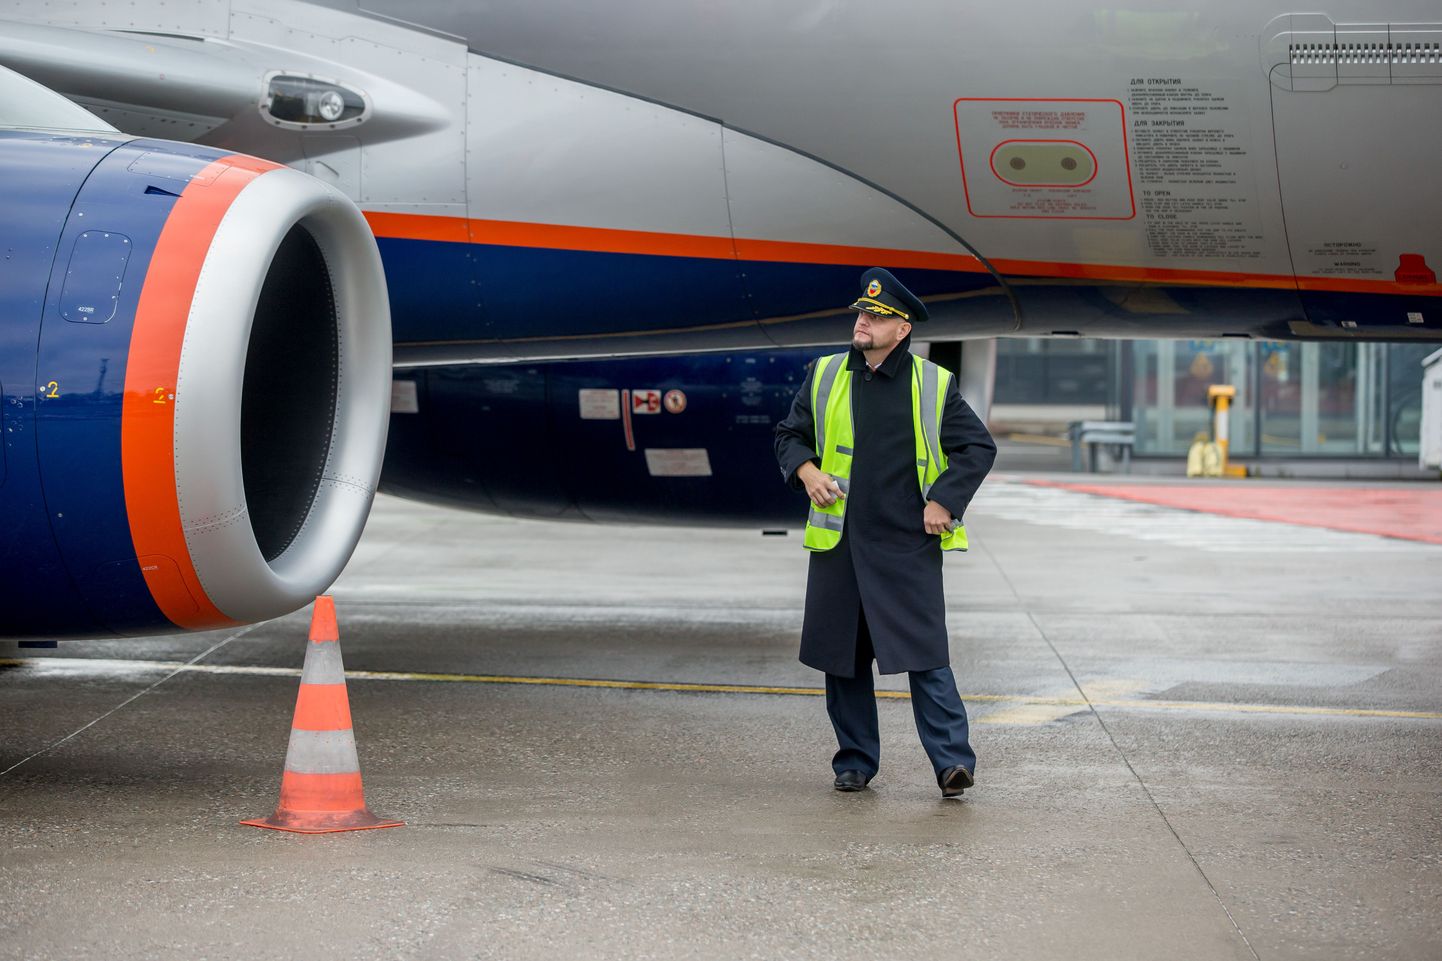 Aeroflotile kuuluv Venemaa reisilennuk Suhhoi Superjet aasta tagasi Tallinna Lennujamas.